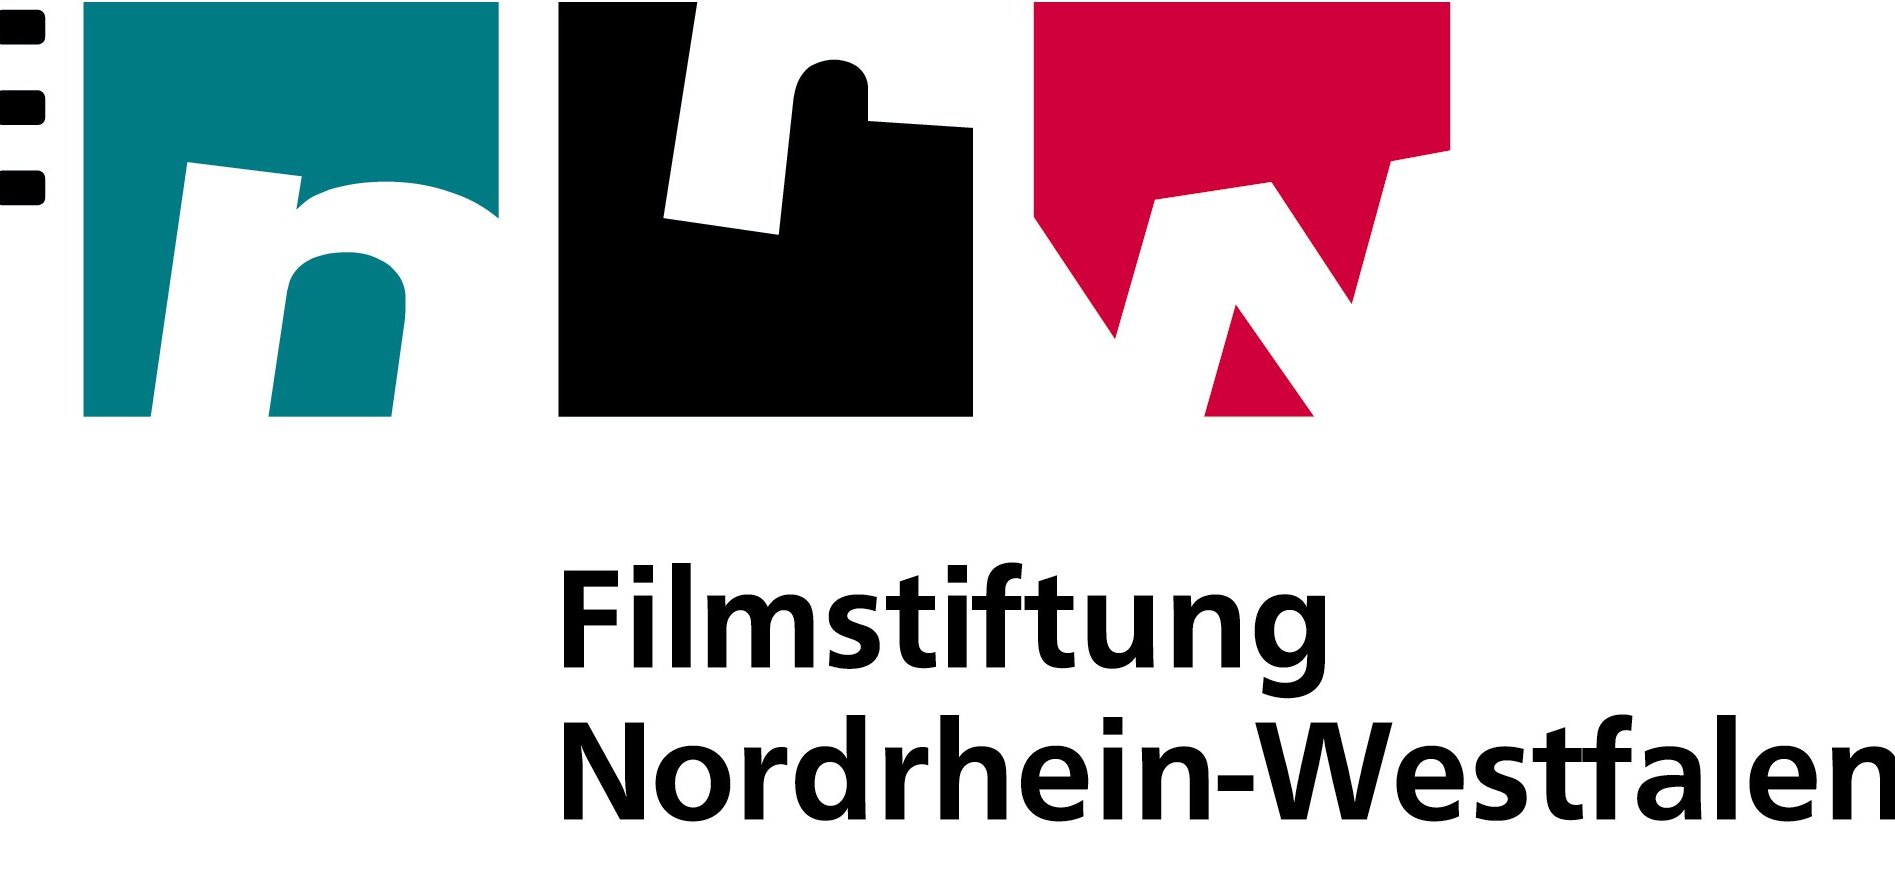 Filmstiftung Nordrhein-Westfalen Logo